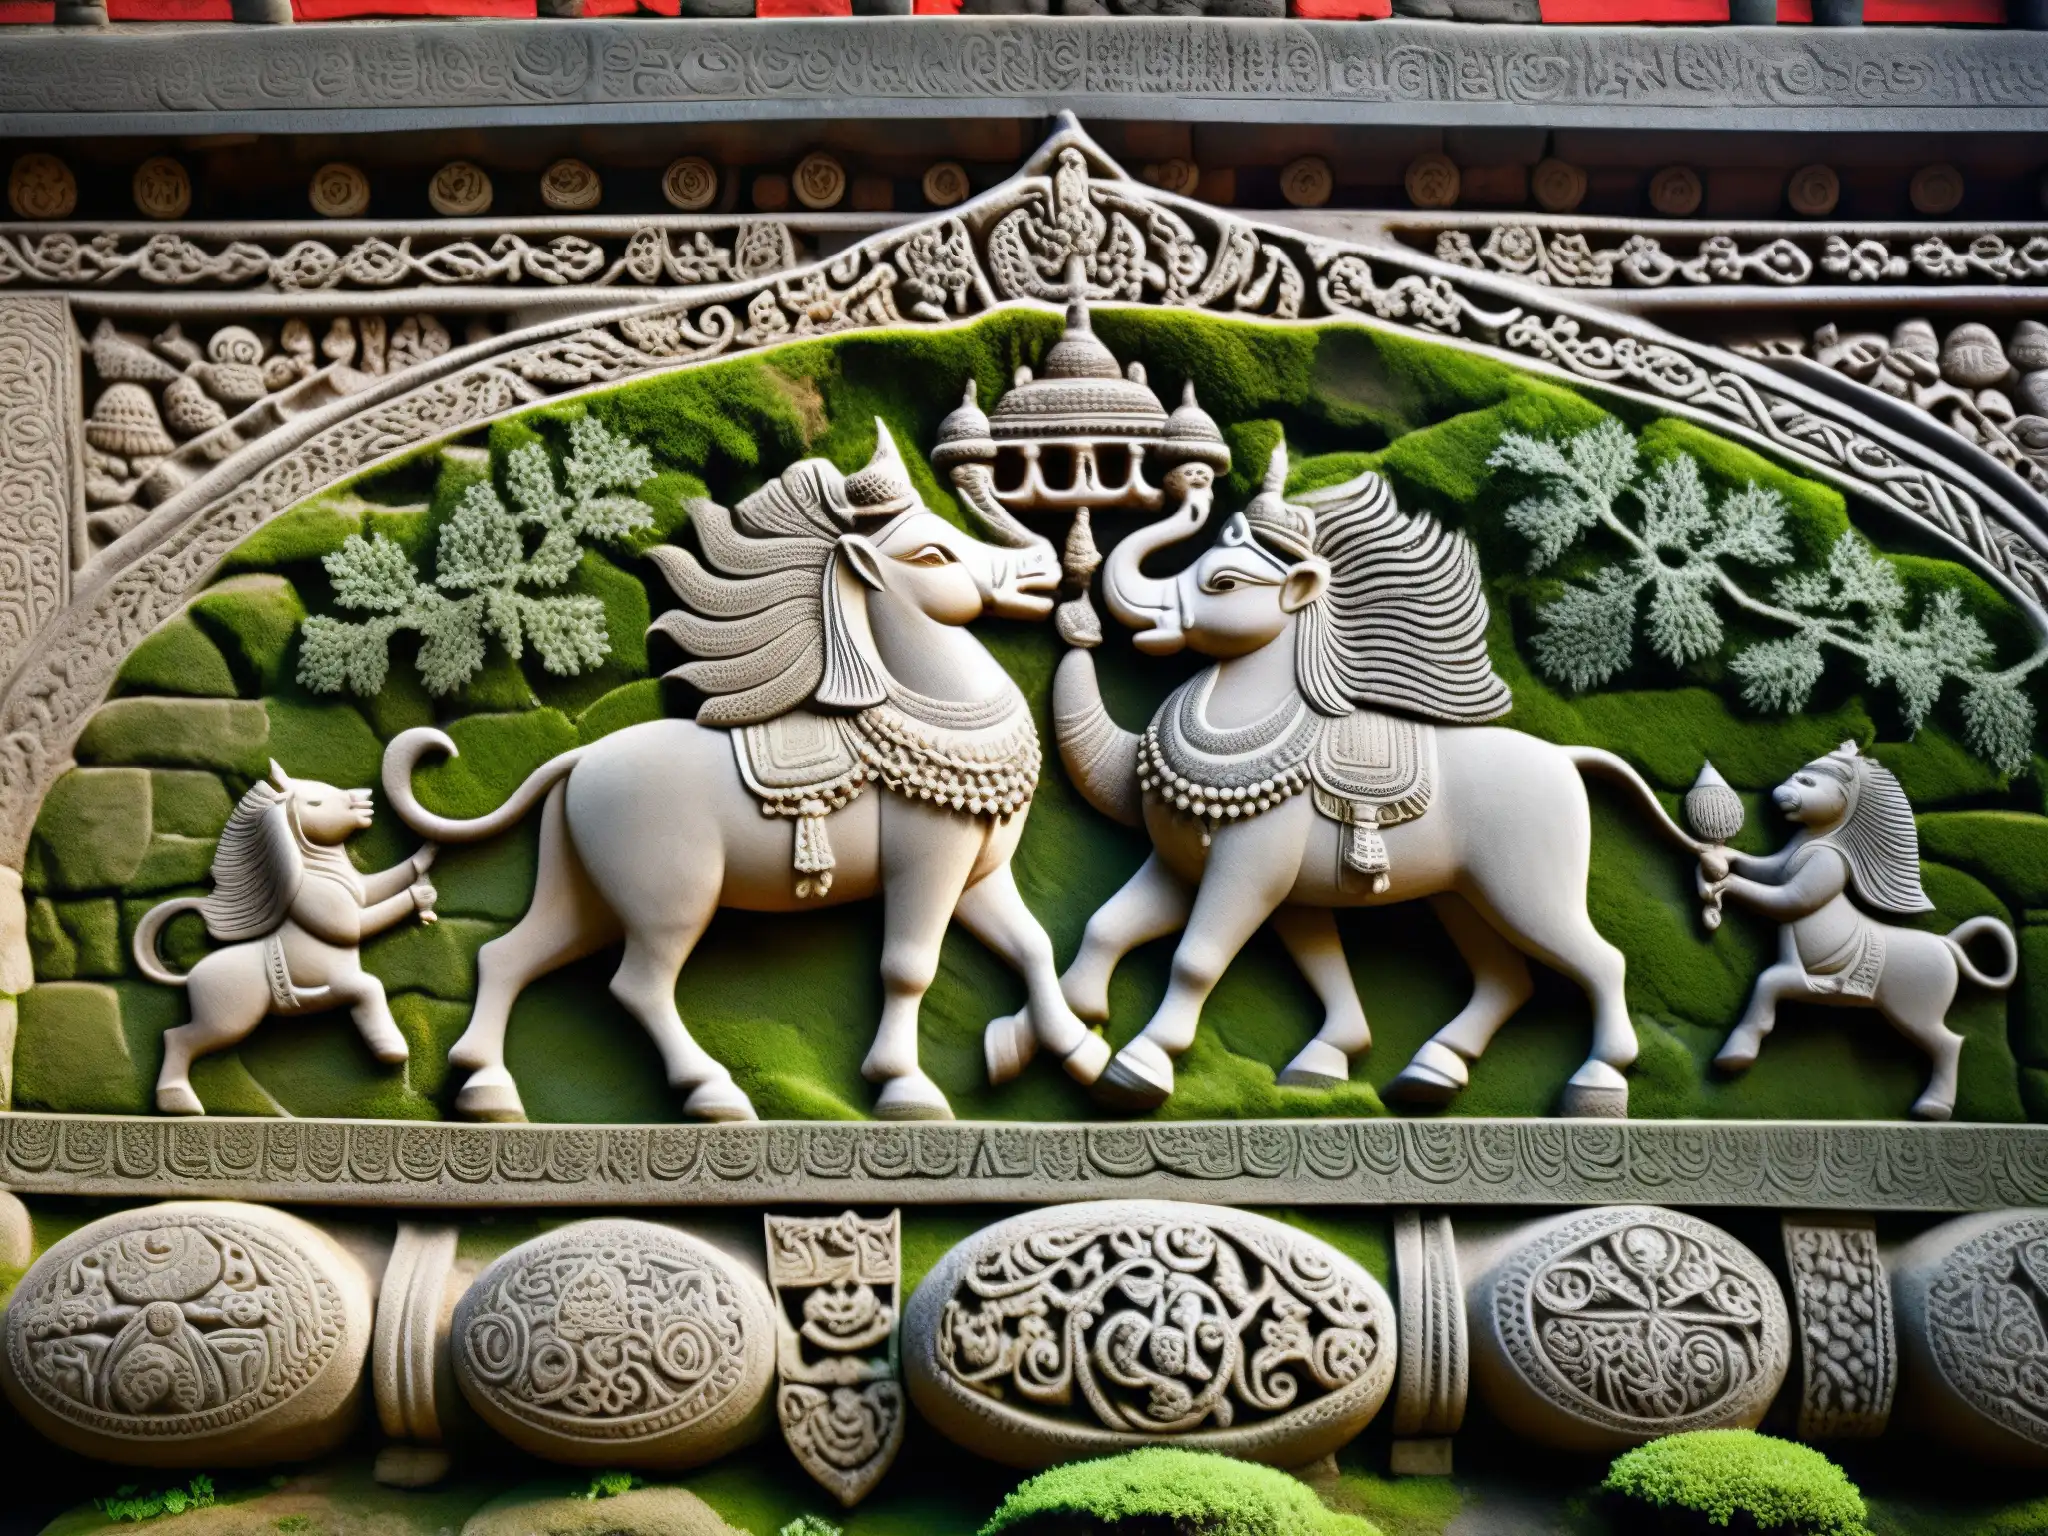 Detalle de los antiguos grabados en el templo Kamakhya, con símbolos místicos y prácticas ocultas